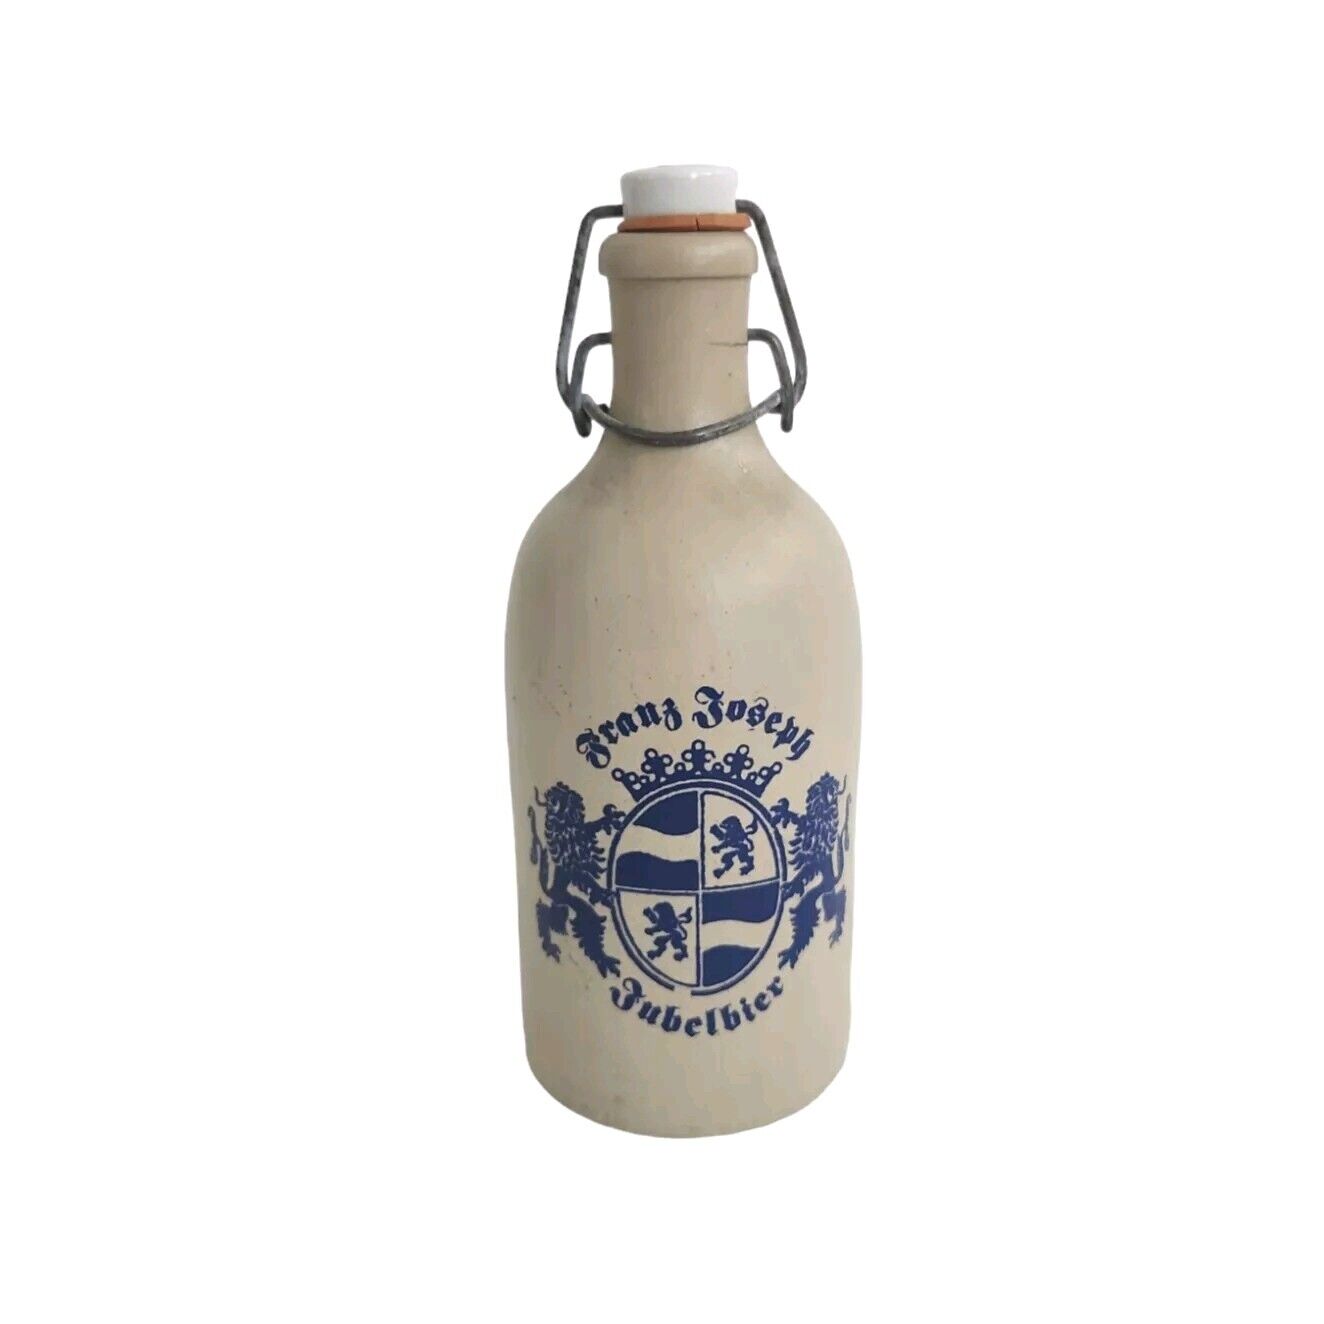 Vtg Franz Joseph Jubelbier Germany Stoneware Beer Bottle Porcelain Lid Stopper